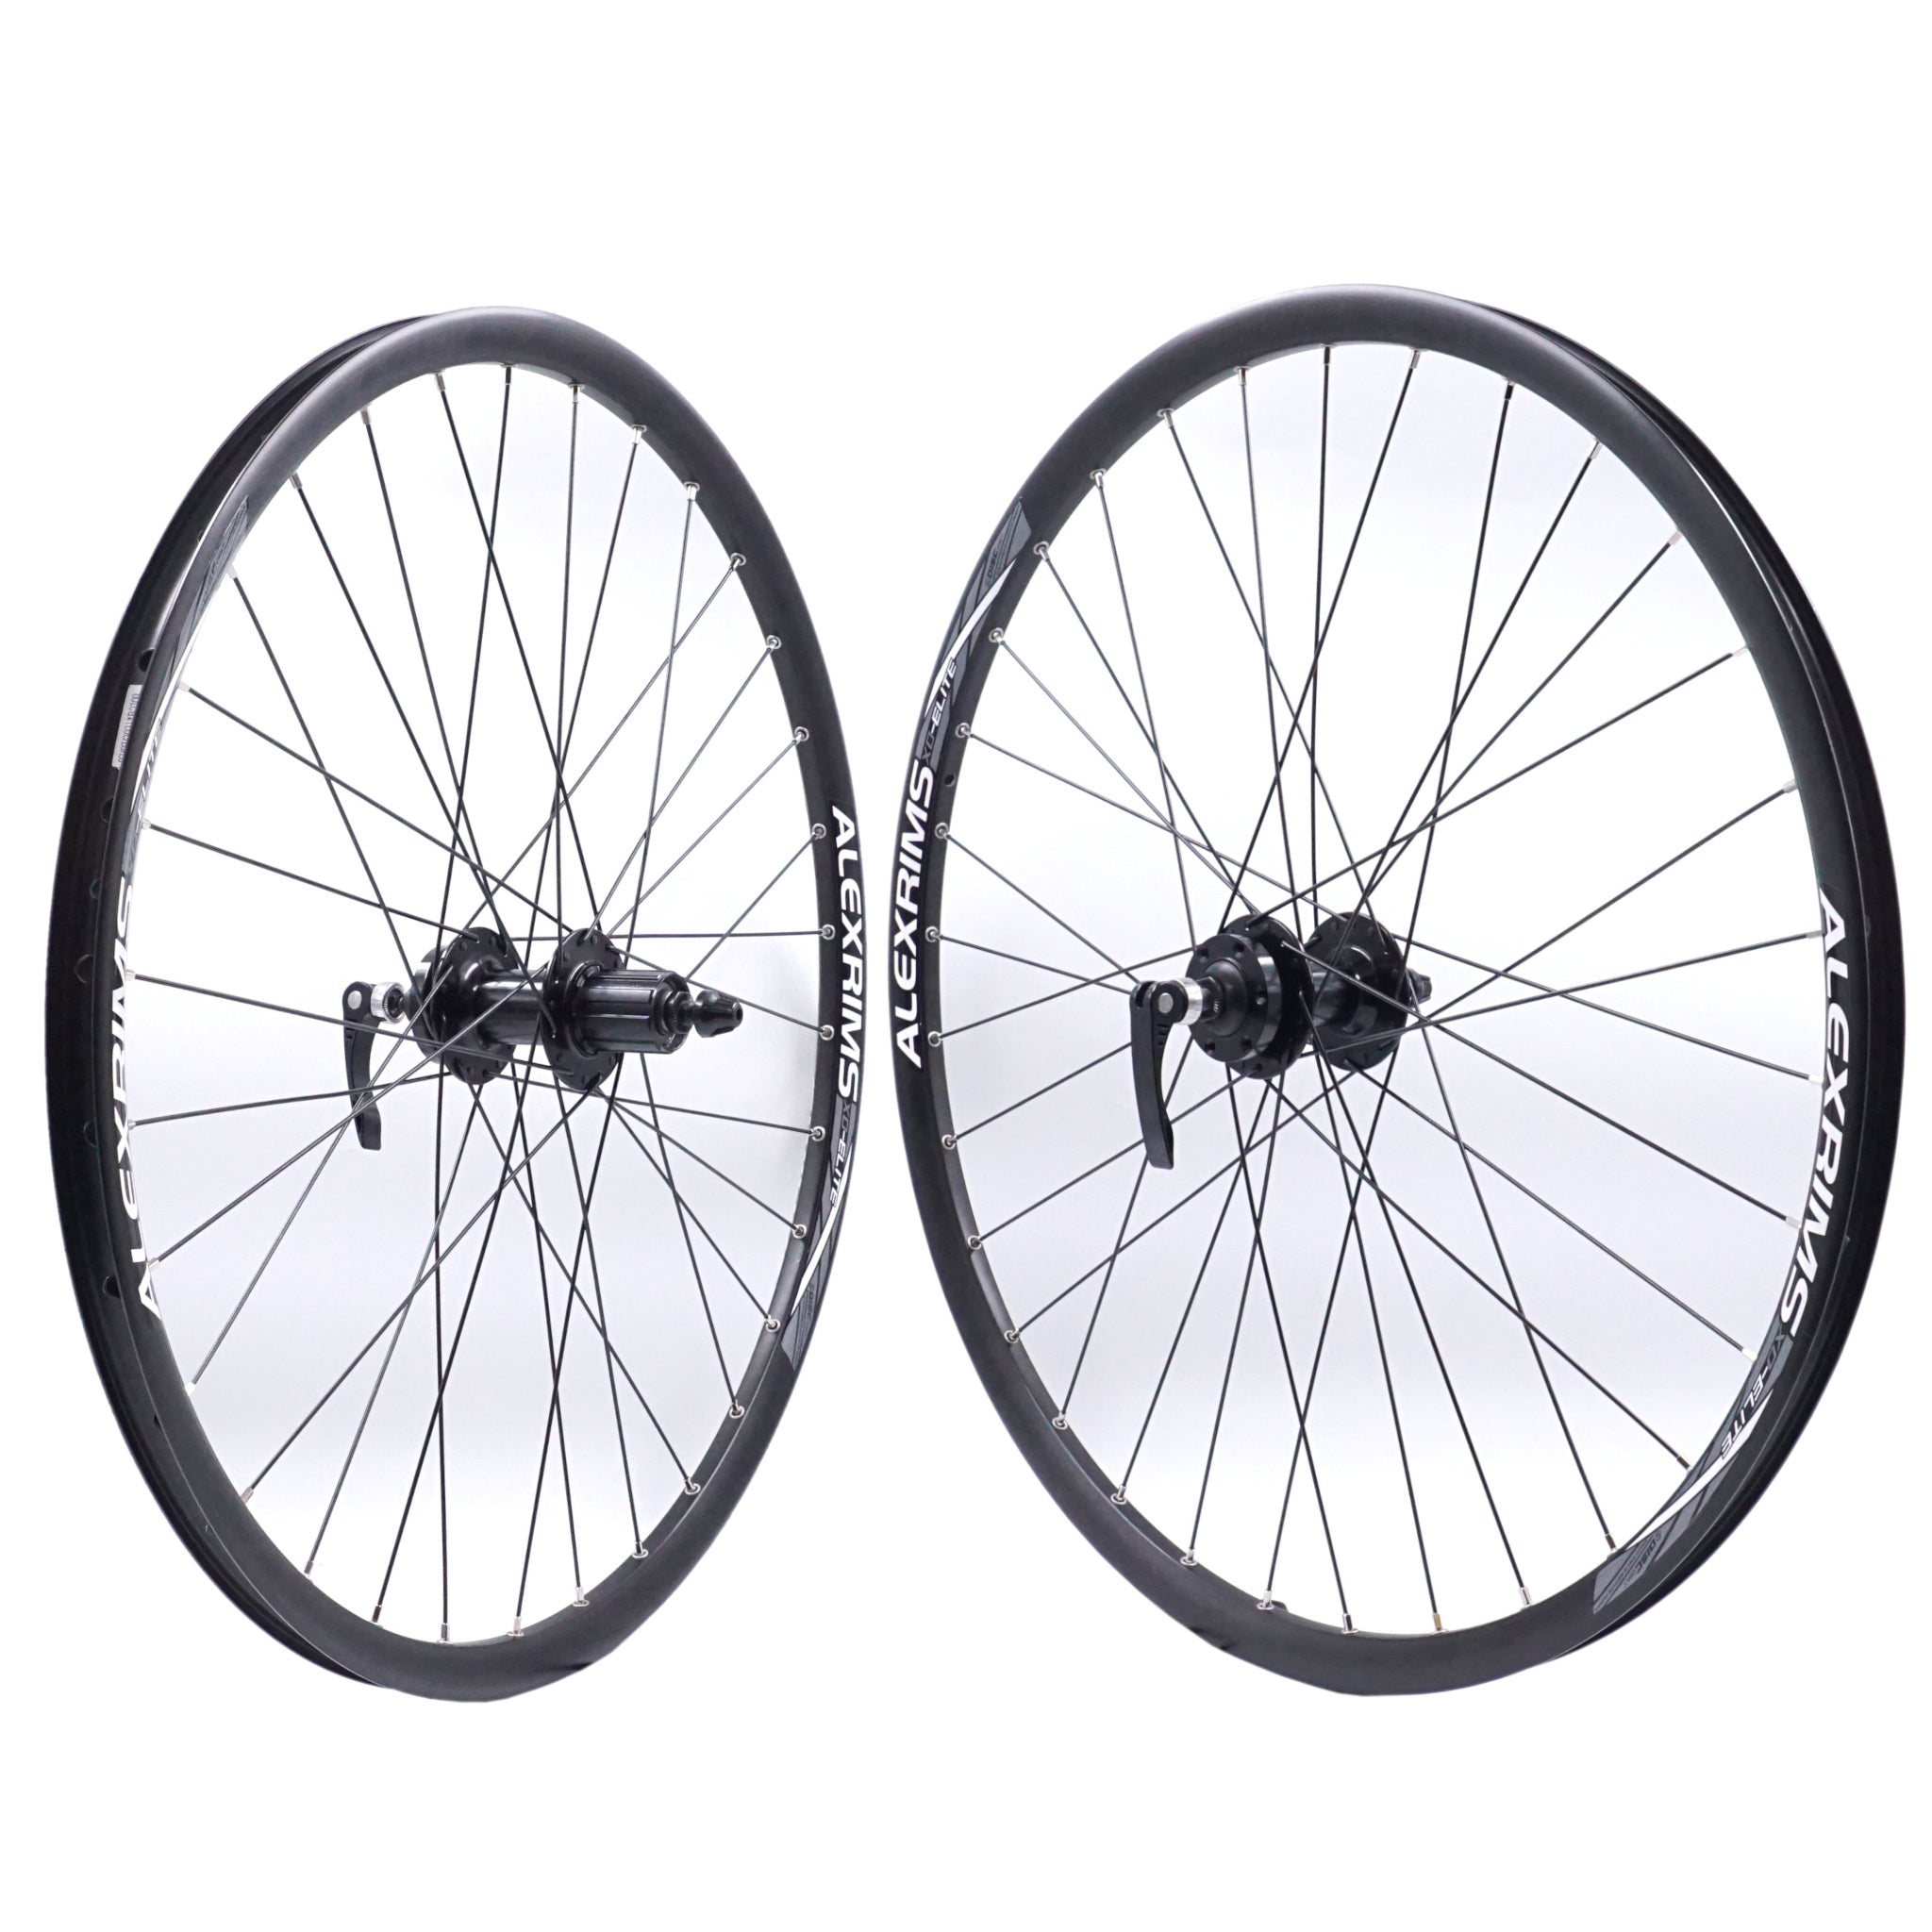 Alex XD-Elite 26-inch Front and Rear Mountain Bike Disc Brake Wheelset - The Bikesmiths